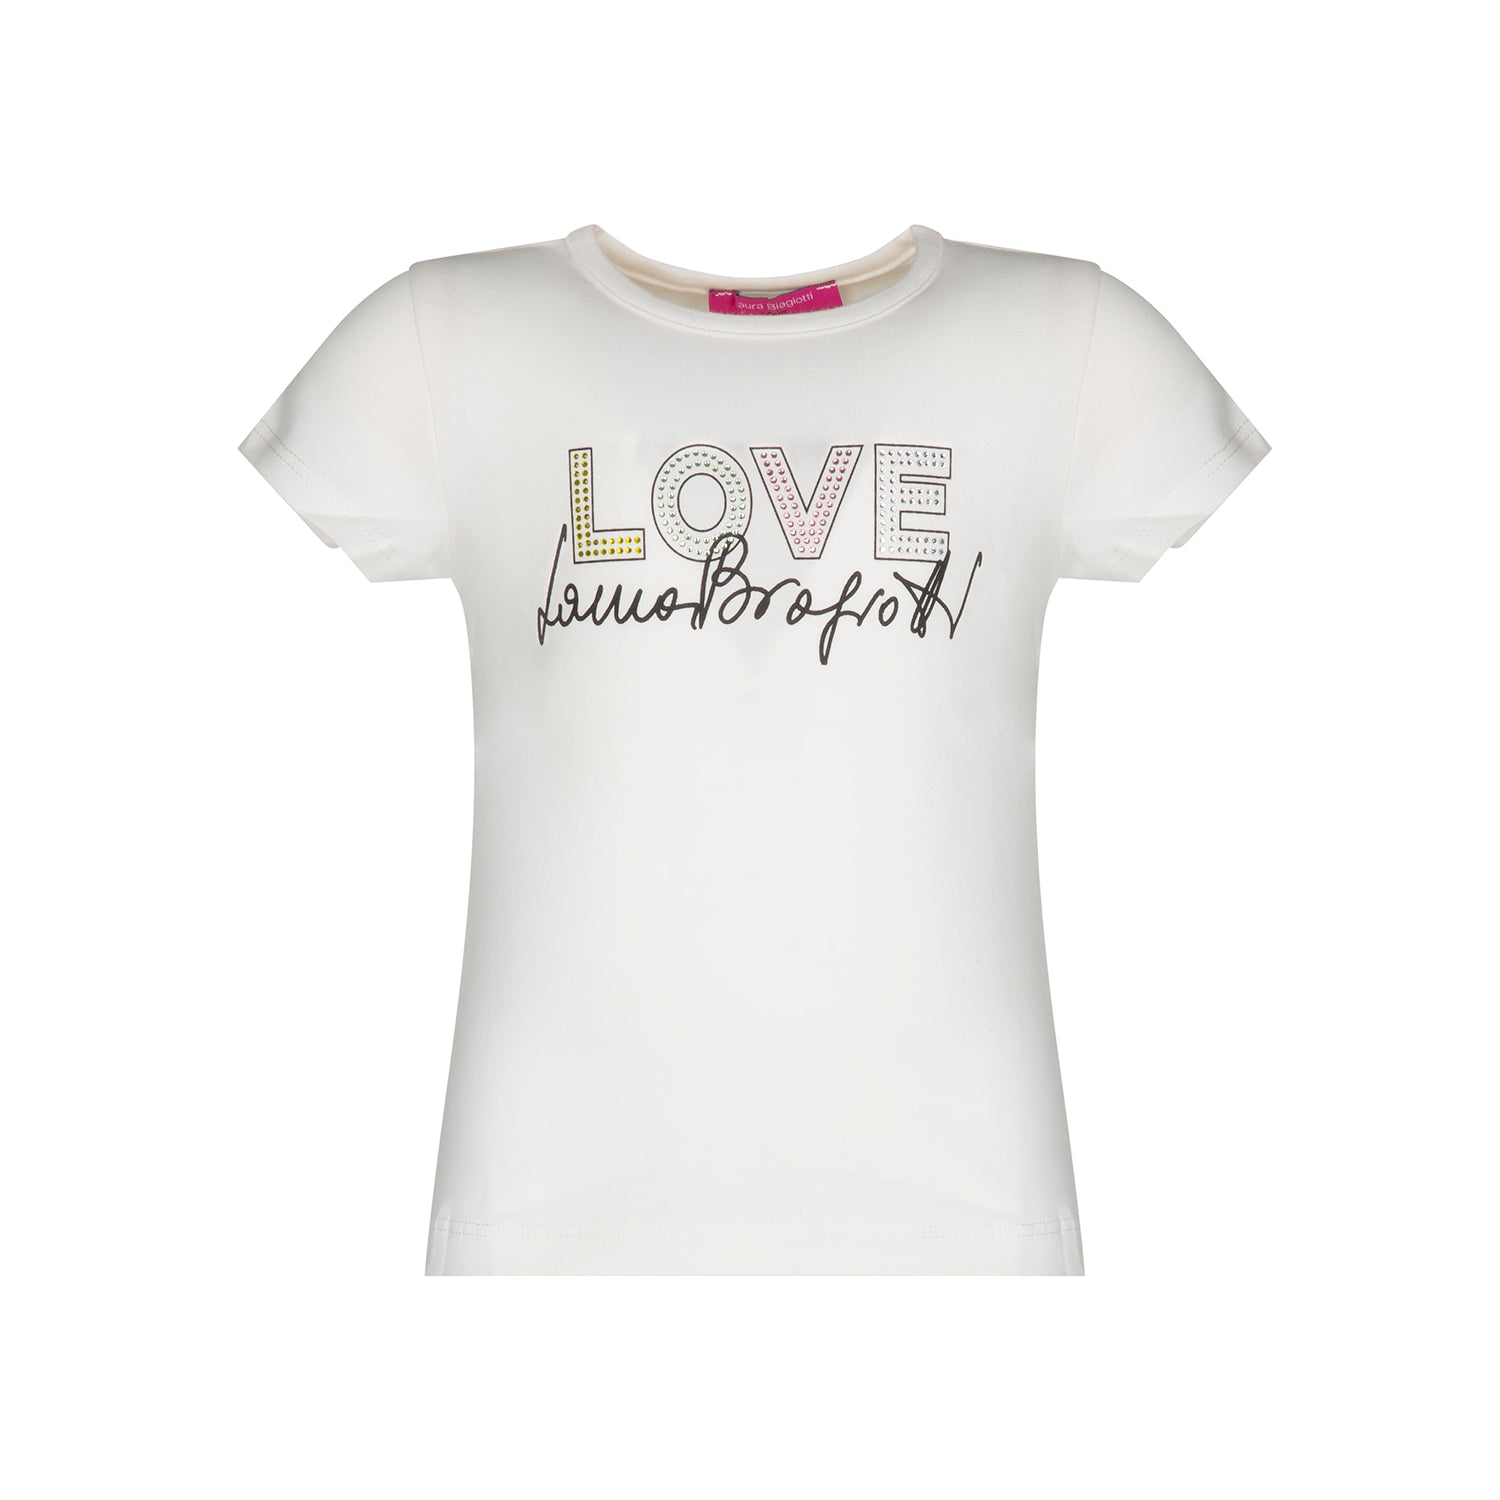 T-shirt bambina Laura Biagiotti in jersey